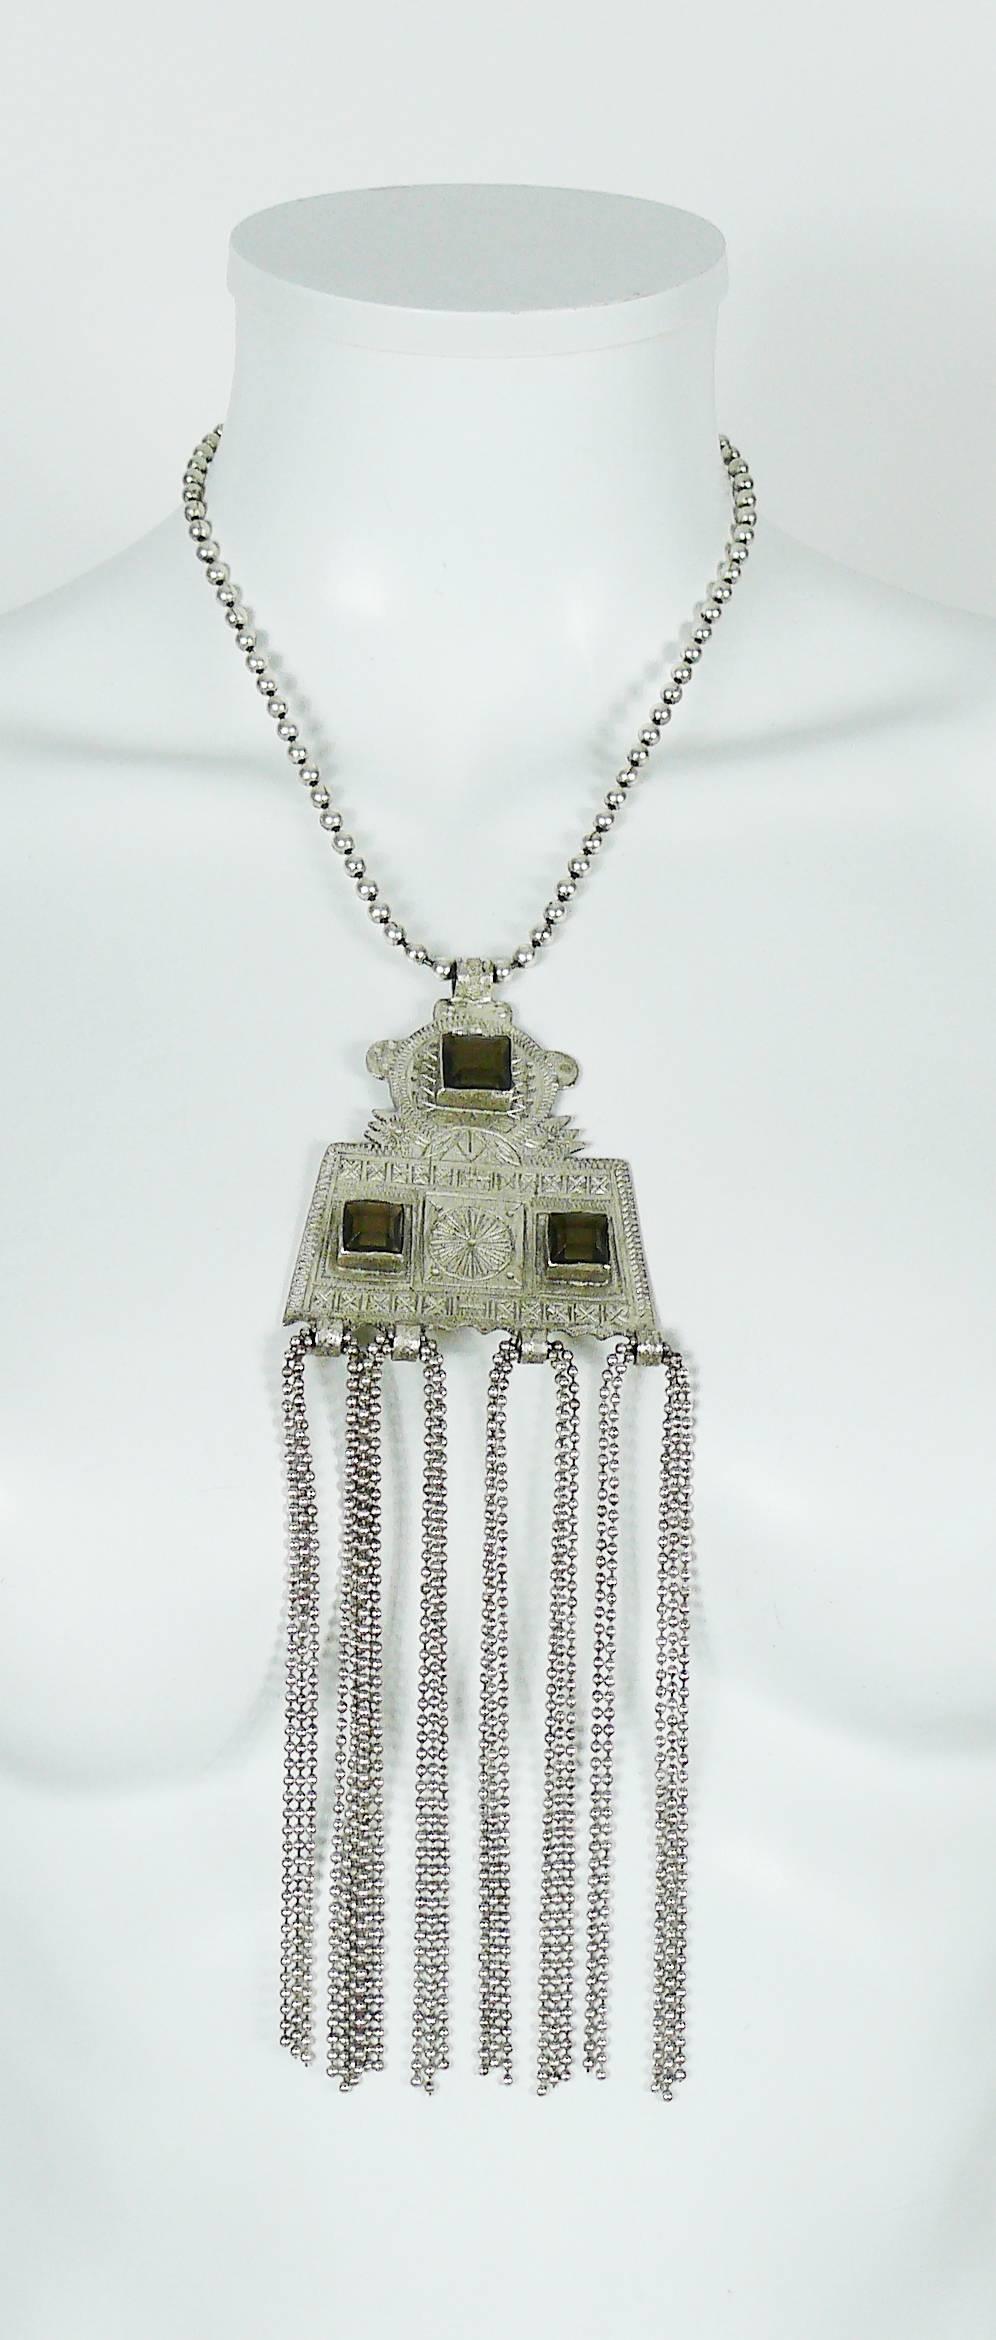 JEAN PAUL GAULTIER Halskette in antikem Silberton mit einem Anhänger im Touareg-Stil, der mit rauchigen Topas-Kristallen und Quasten verziert ist.

Kugelkette.

Hakenverschluß.
Verlängerungskette.

Gekennzeichnet mit GAULTIER.

Ungefähre Maße: max.